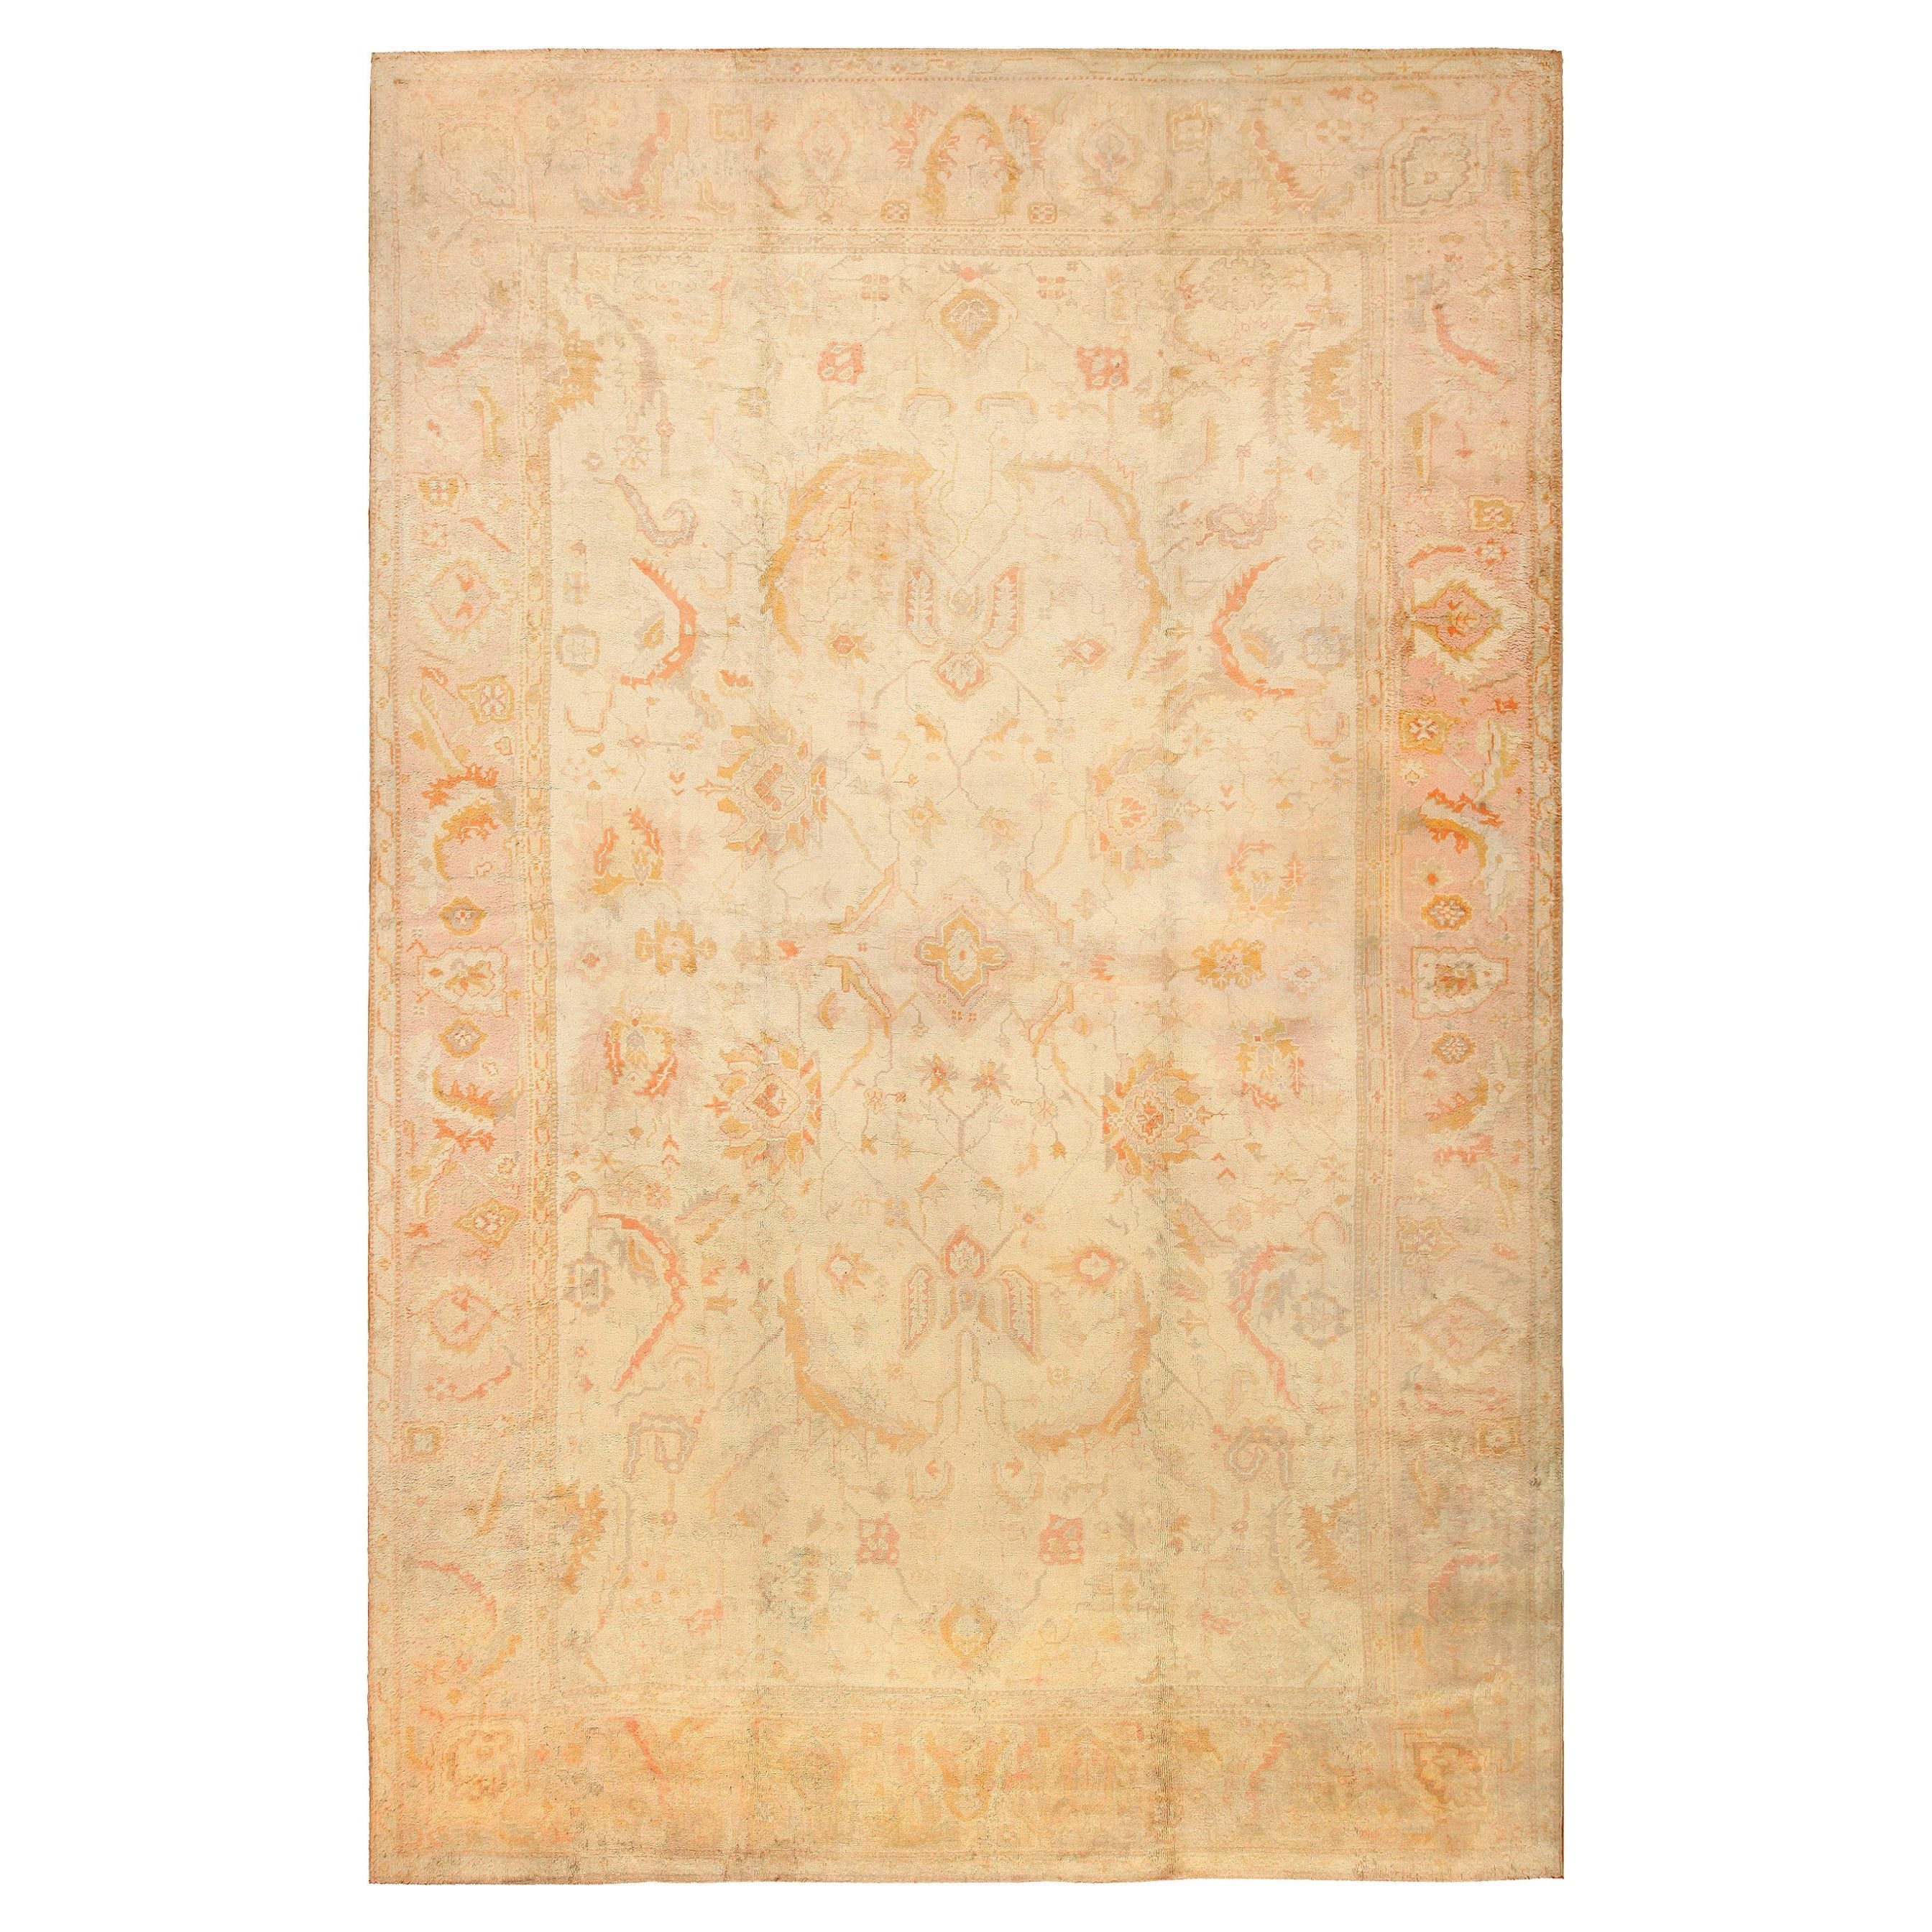 Antiker türkischer Oushak-Teppich. Größe: 12 ft 8 in x 19 ft 7 in